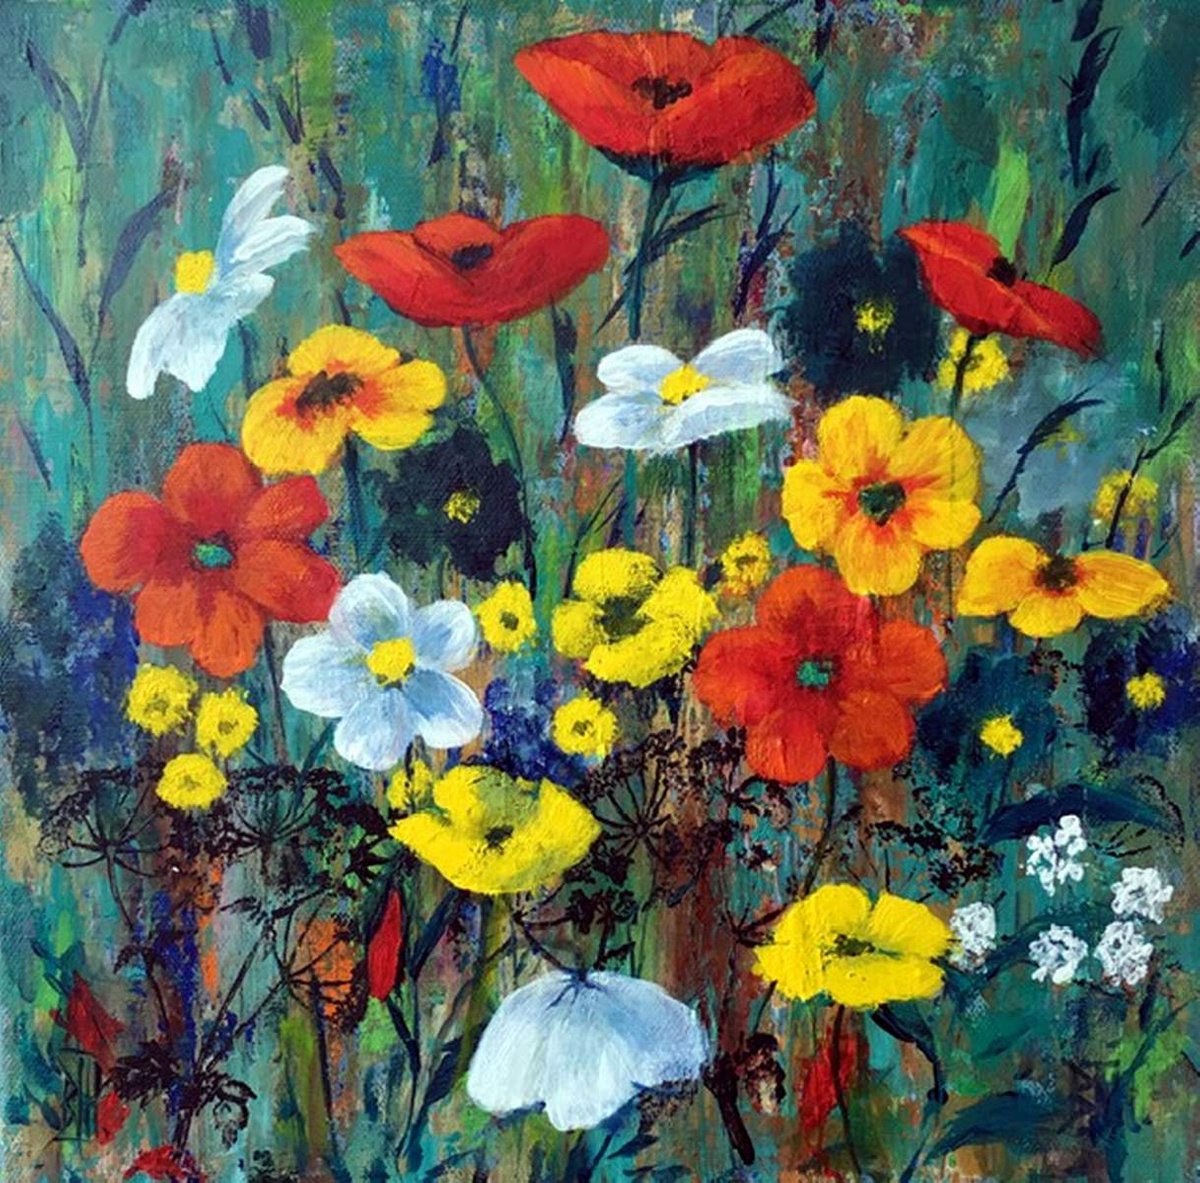 PLETHORA OF FLOWERS by BARBARA HARLOW